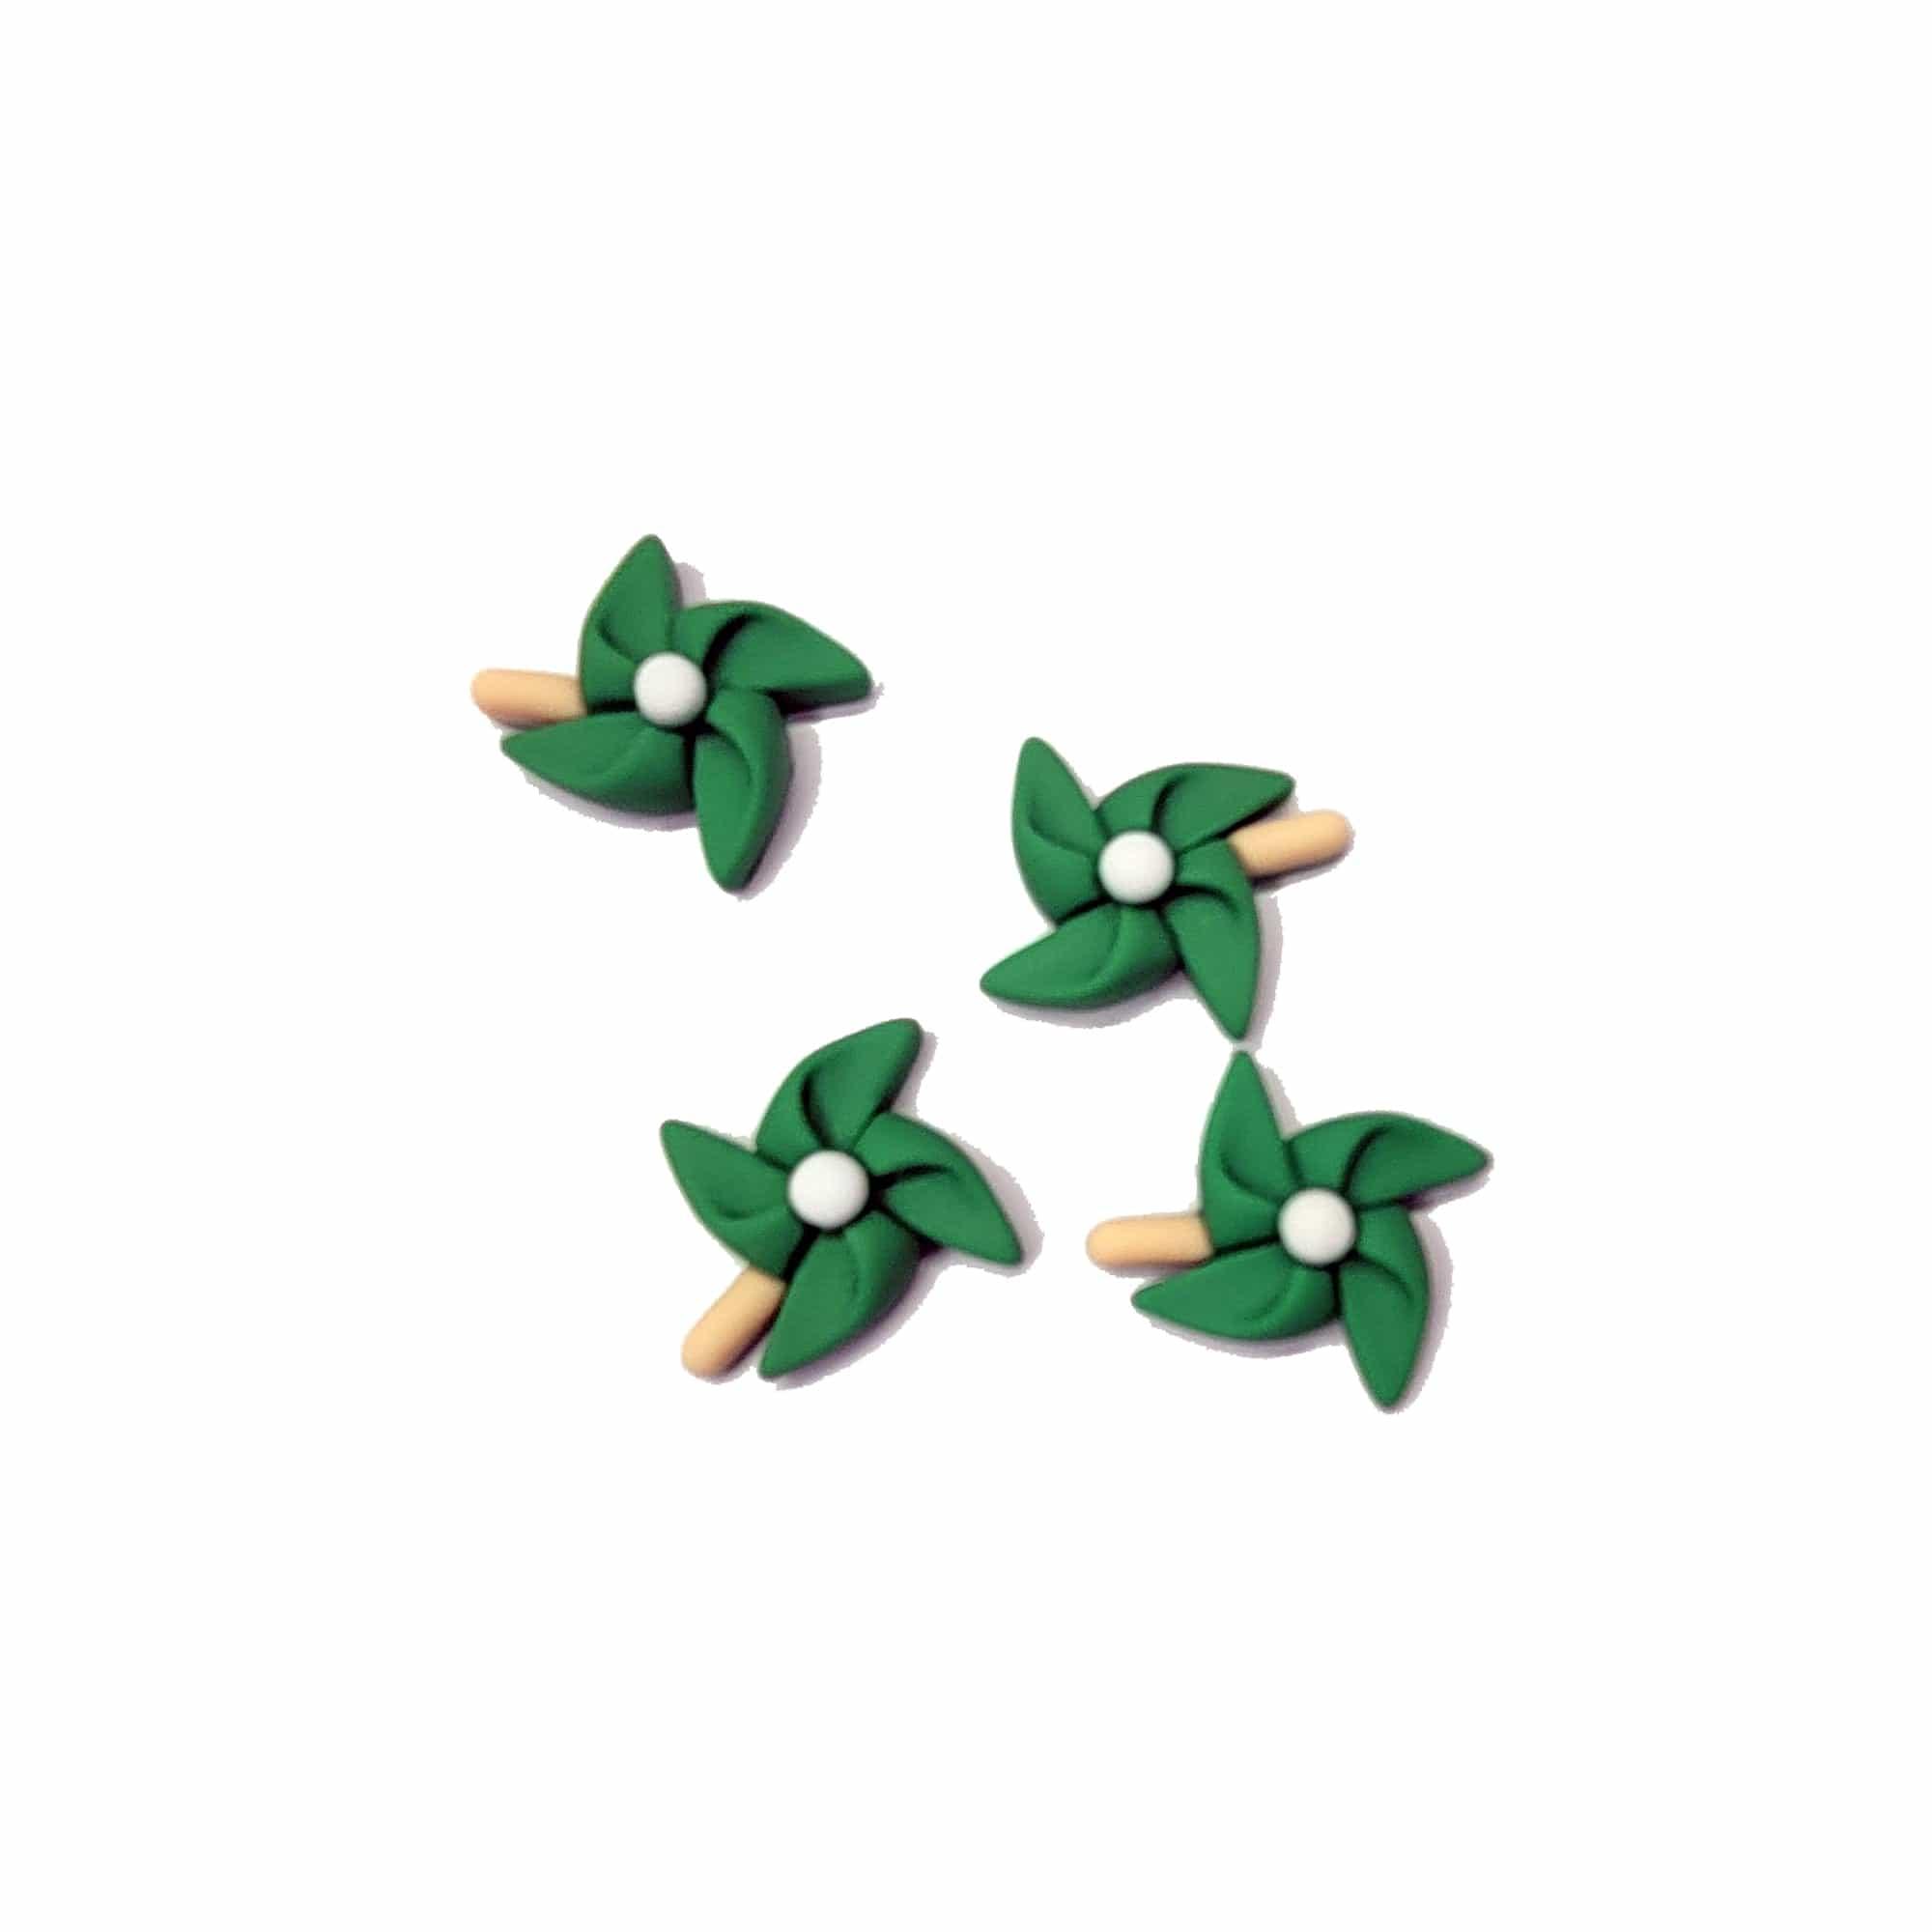 Summer Fun Collection Green Pinwheels Flatback Scrapbook Buttons by SSC Designs - Pkg. of 4 - Scrapbook Supply Companies